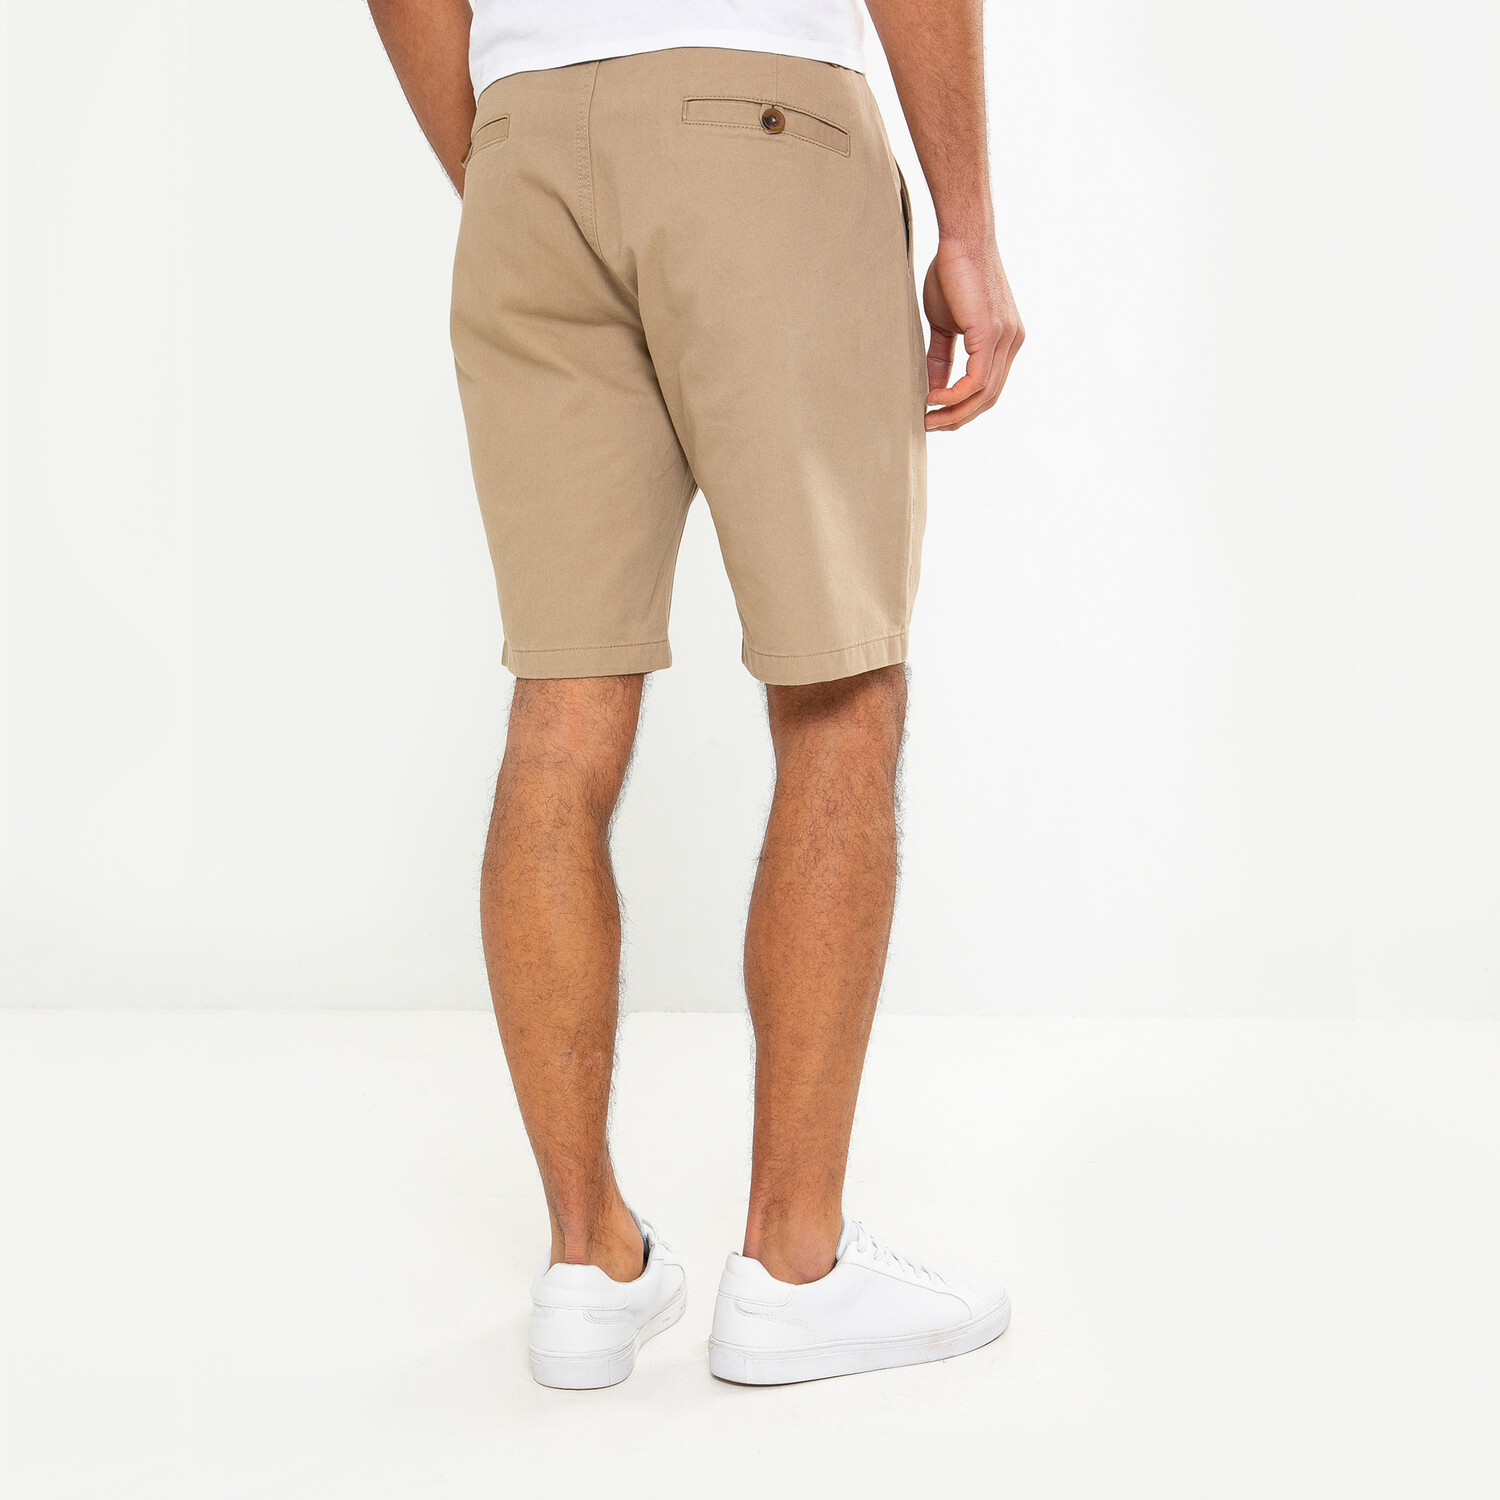 Southsea Men's Cotton Shorts  - Stone / S Image 2